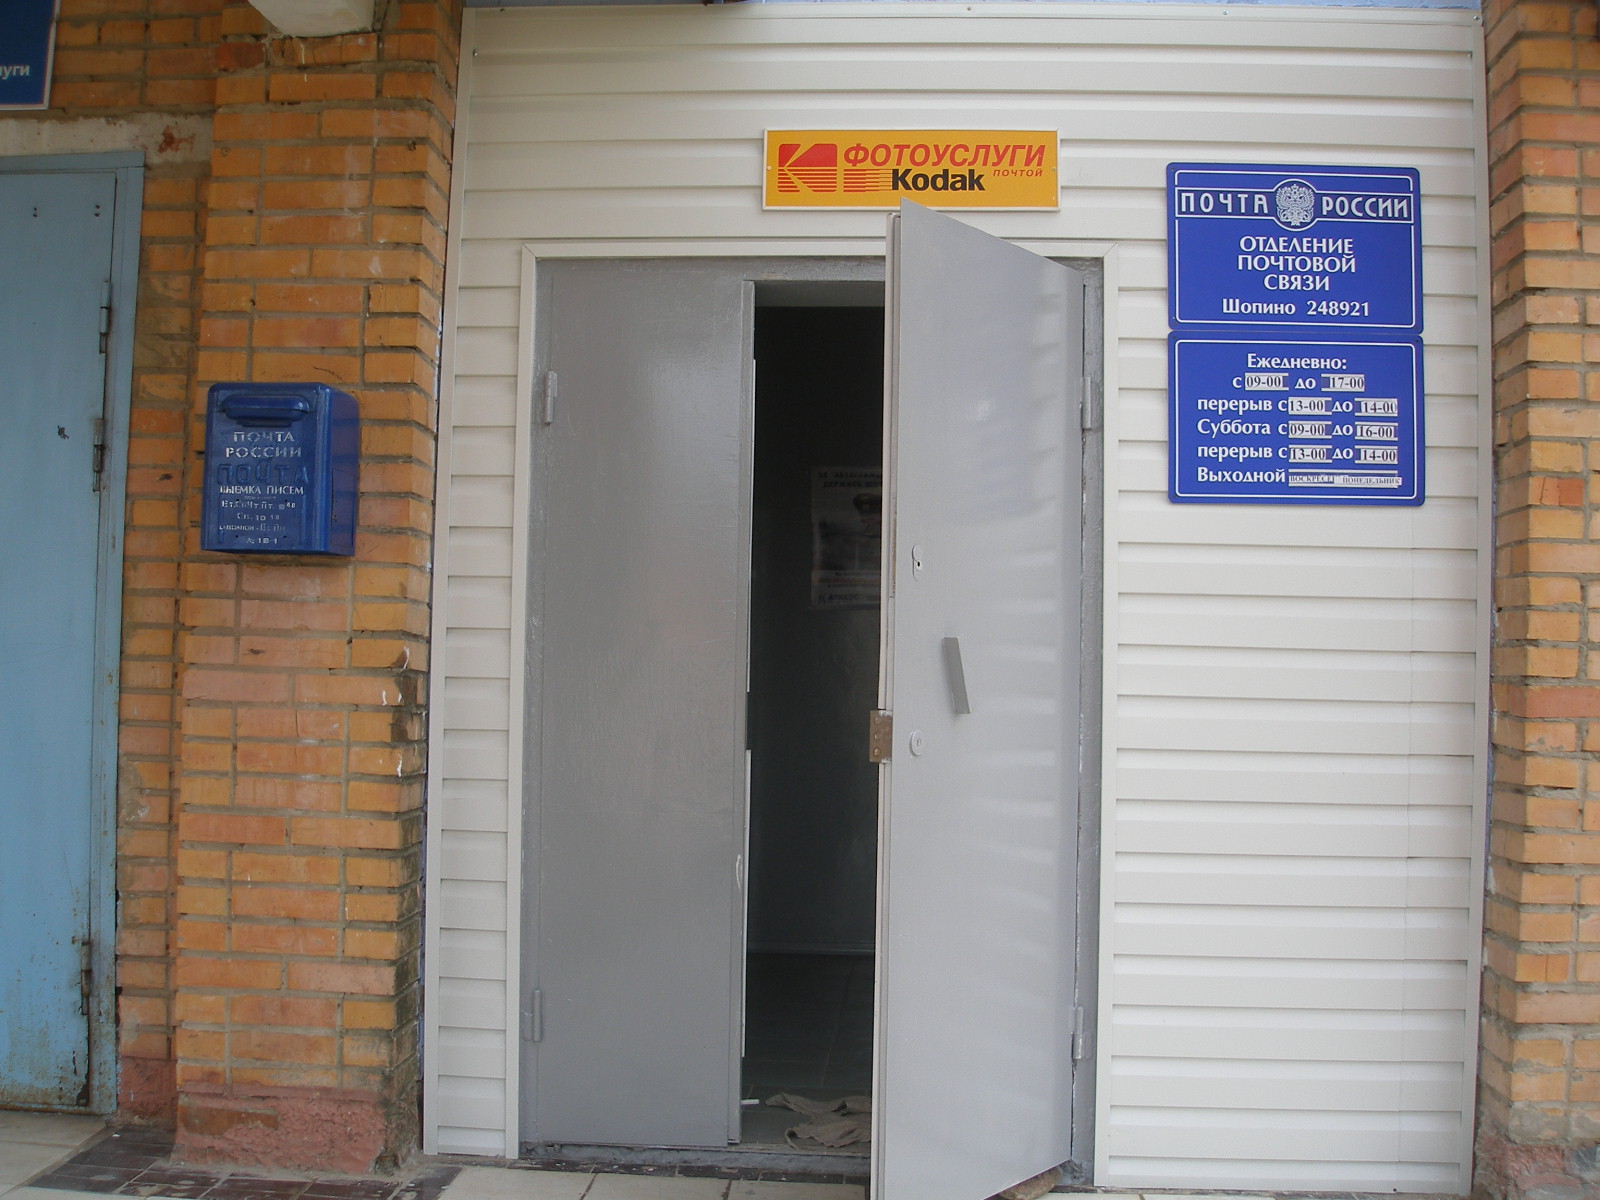 ВХОД, отделение почтовой связи 248921, Калужская обл., Калуга, Шопино